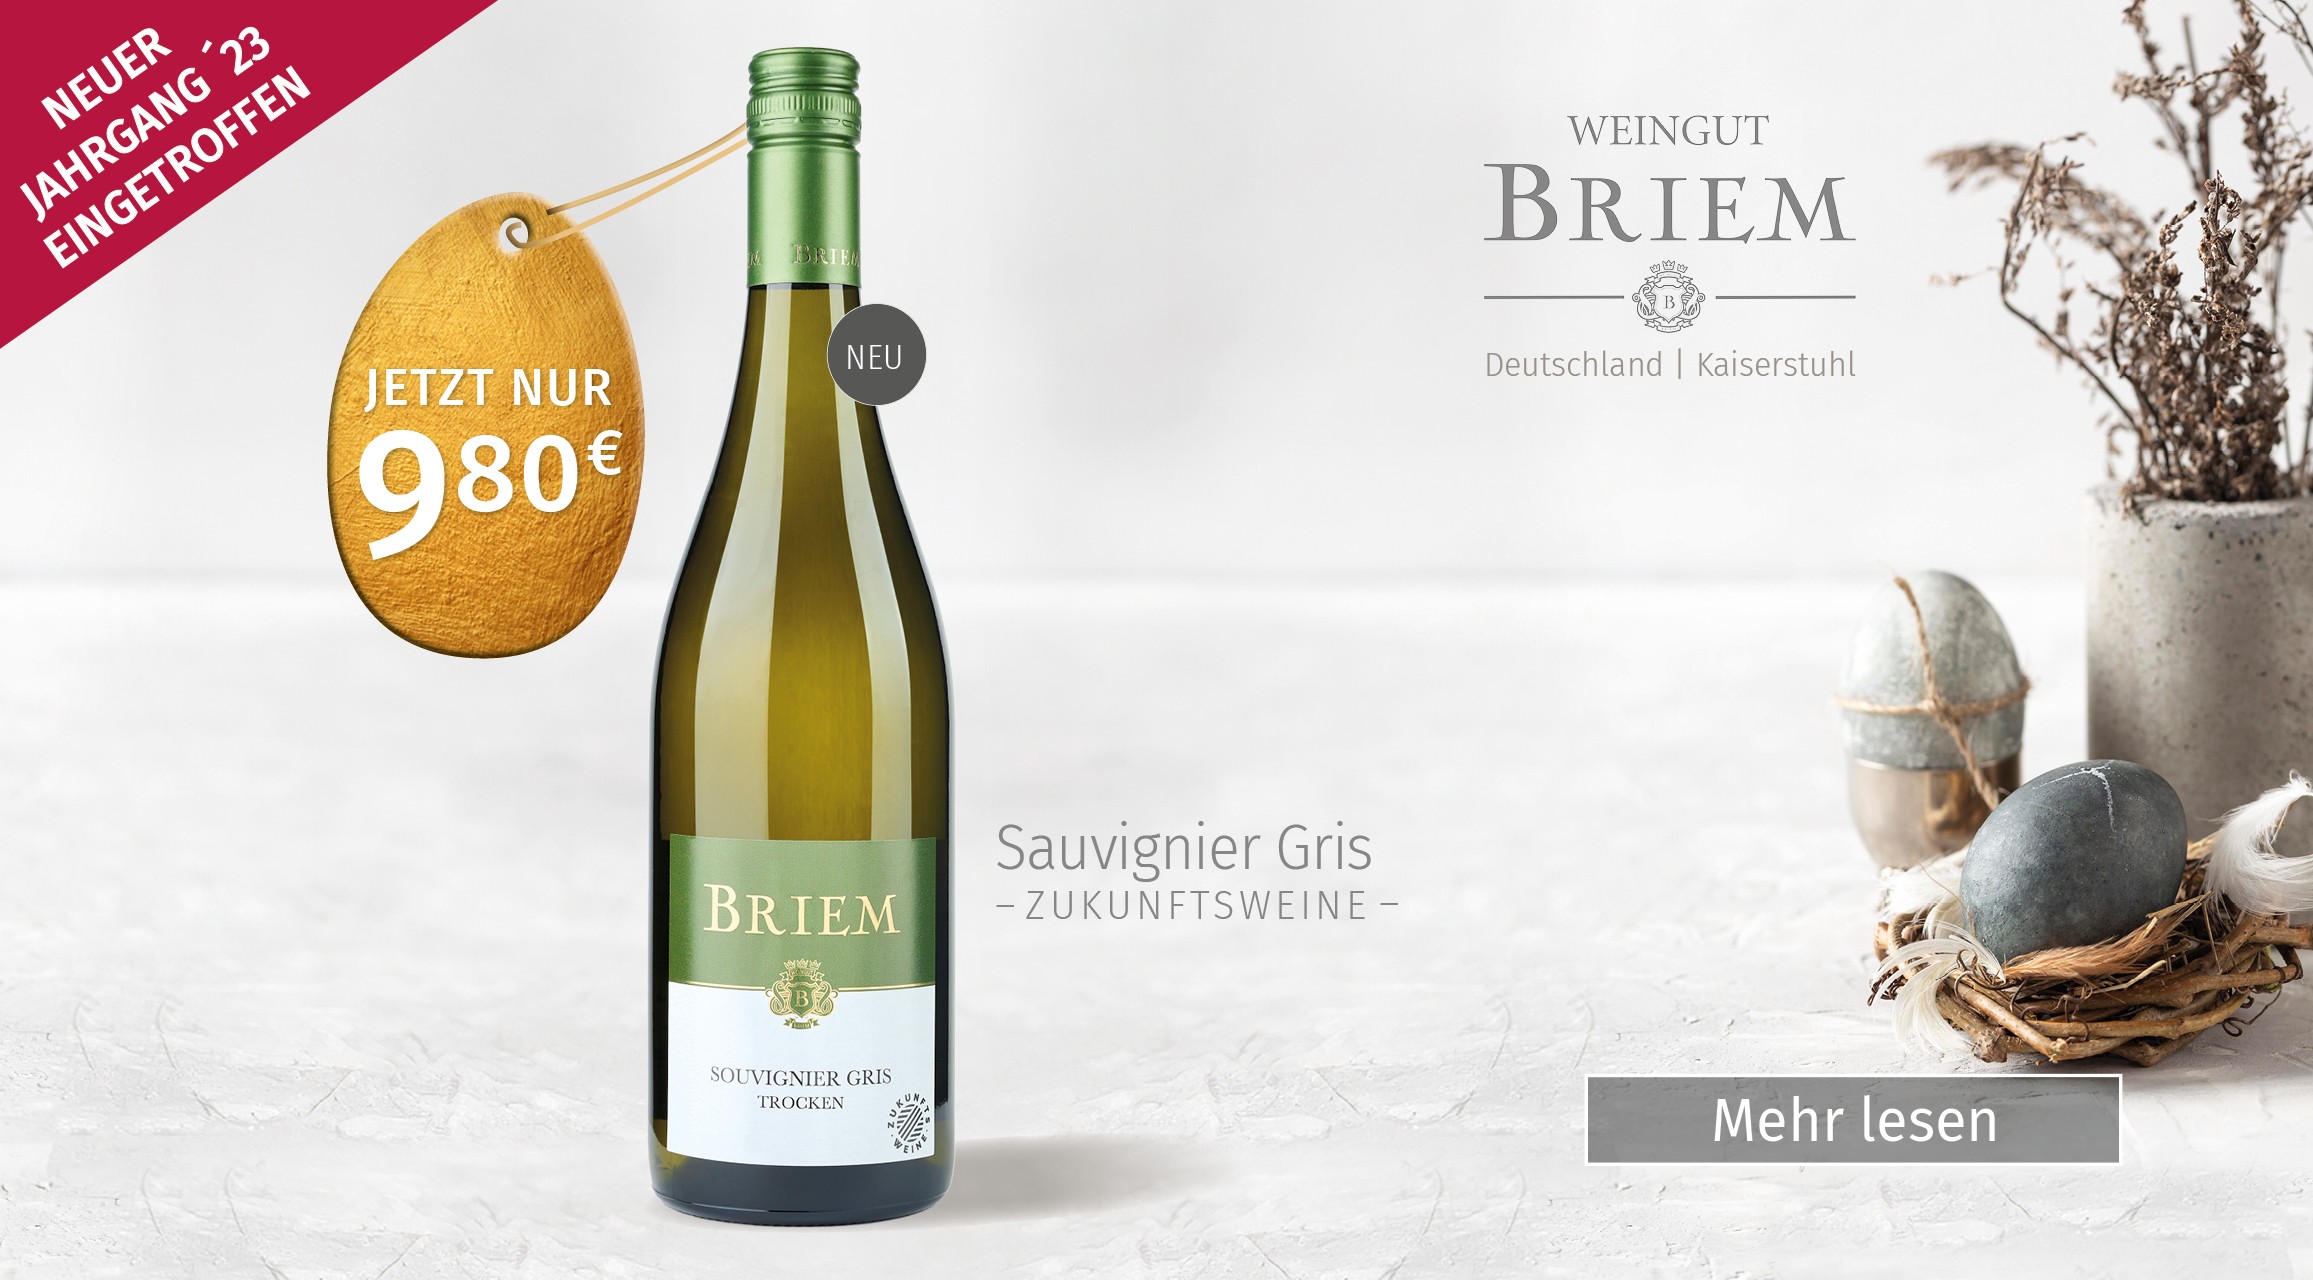 Sauvignier Gris, Zukunftsweine, Weingut Briem, Wein Cabiet Briem, Bonn